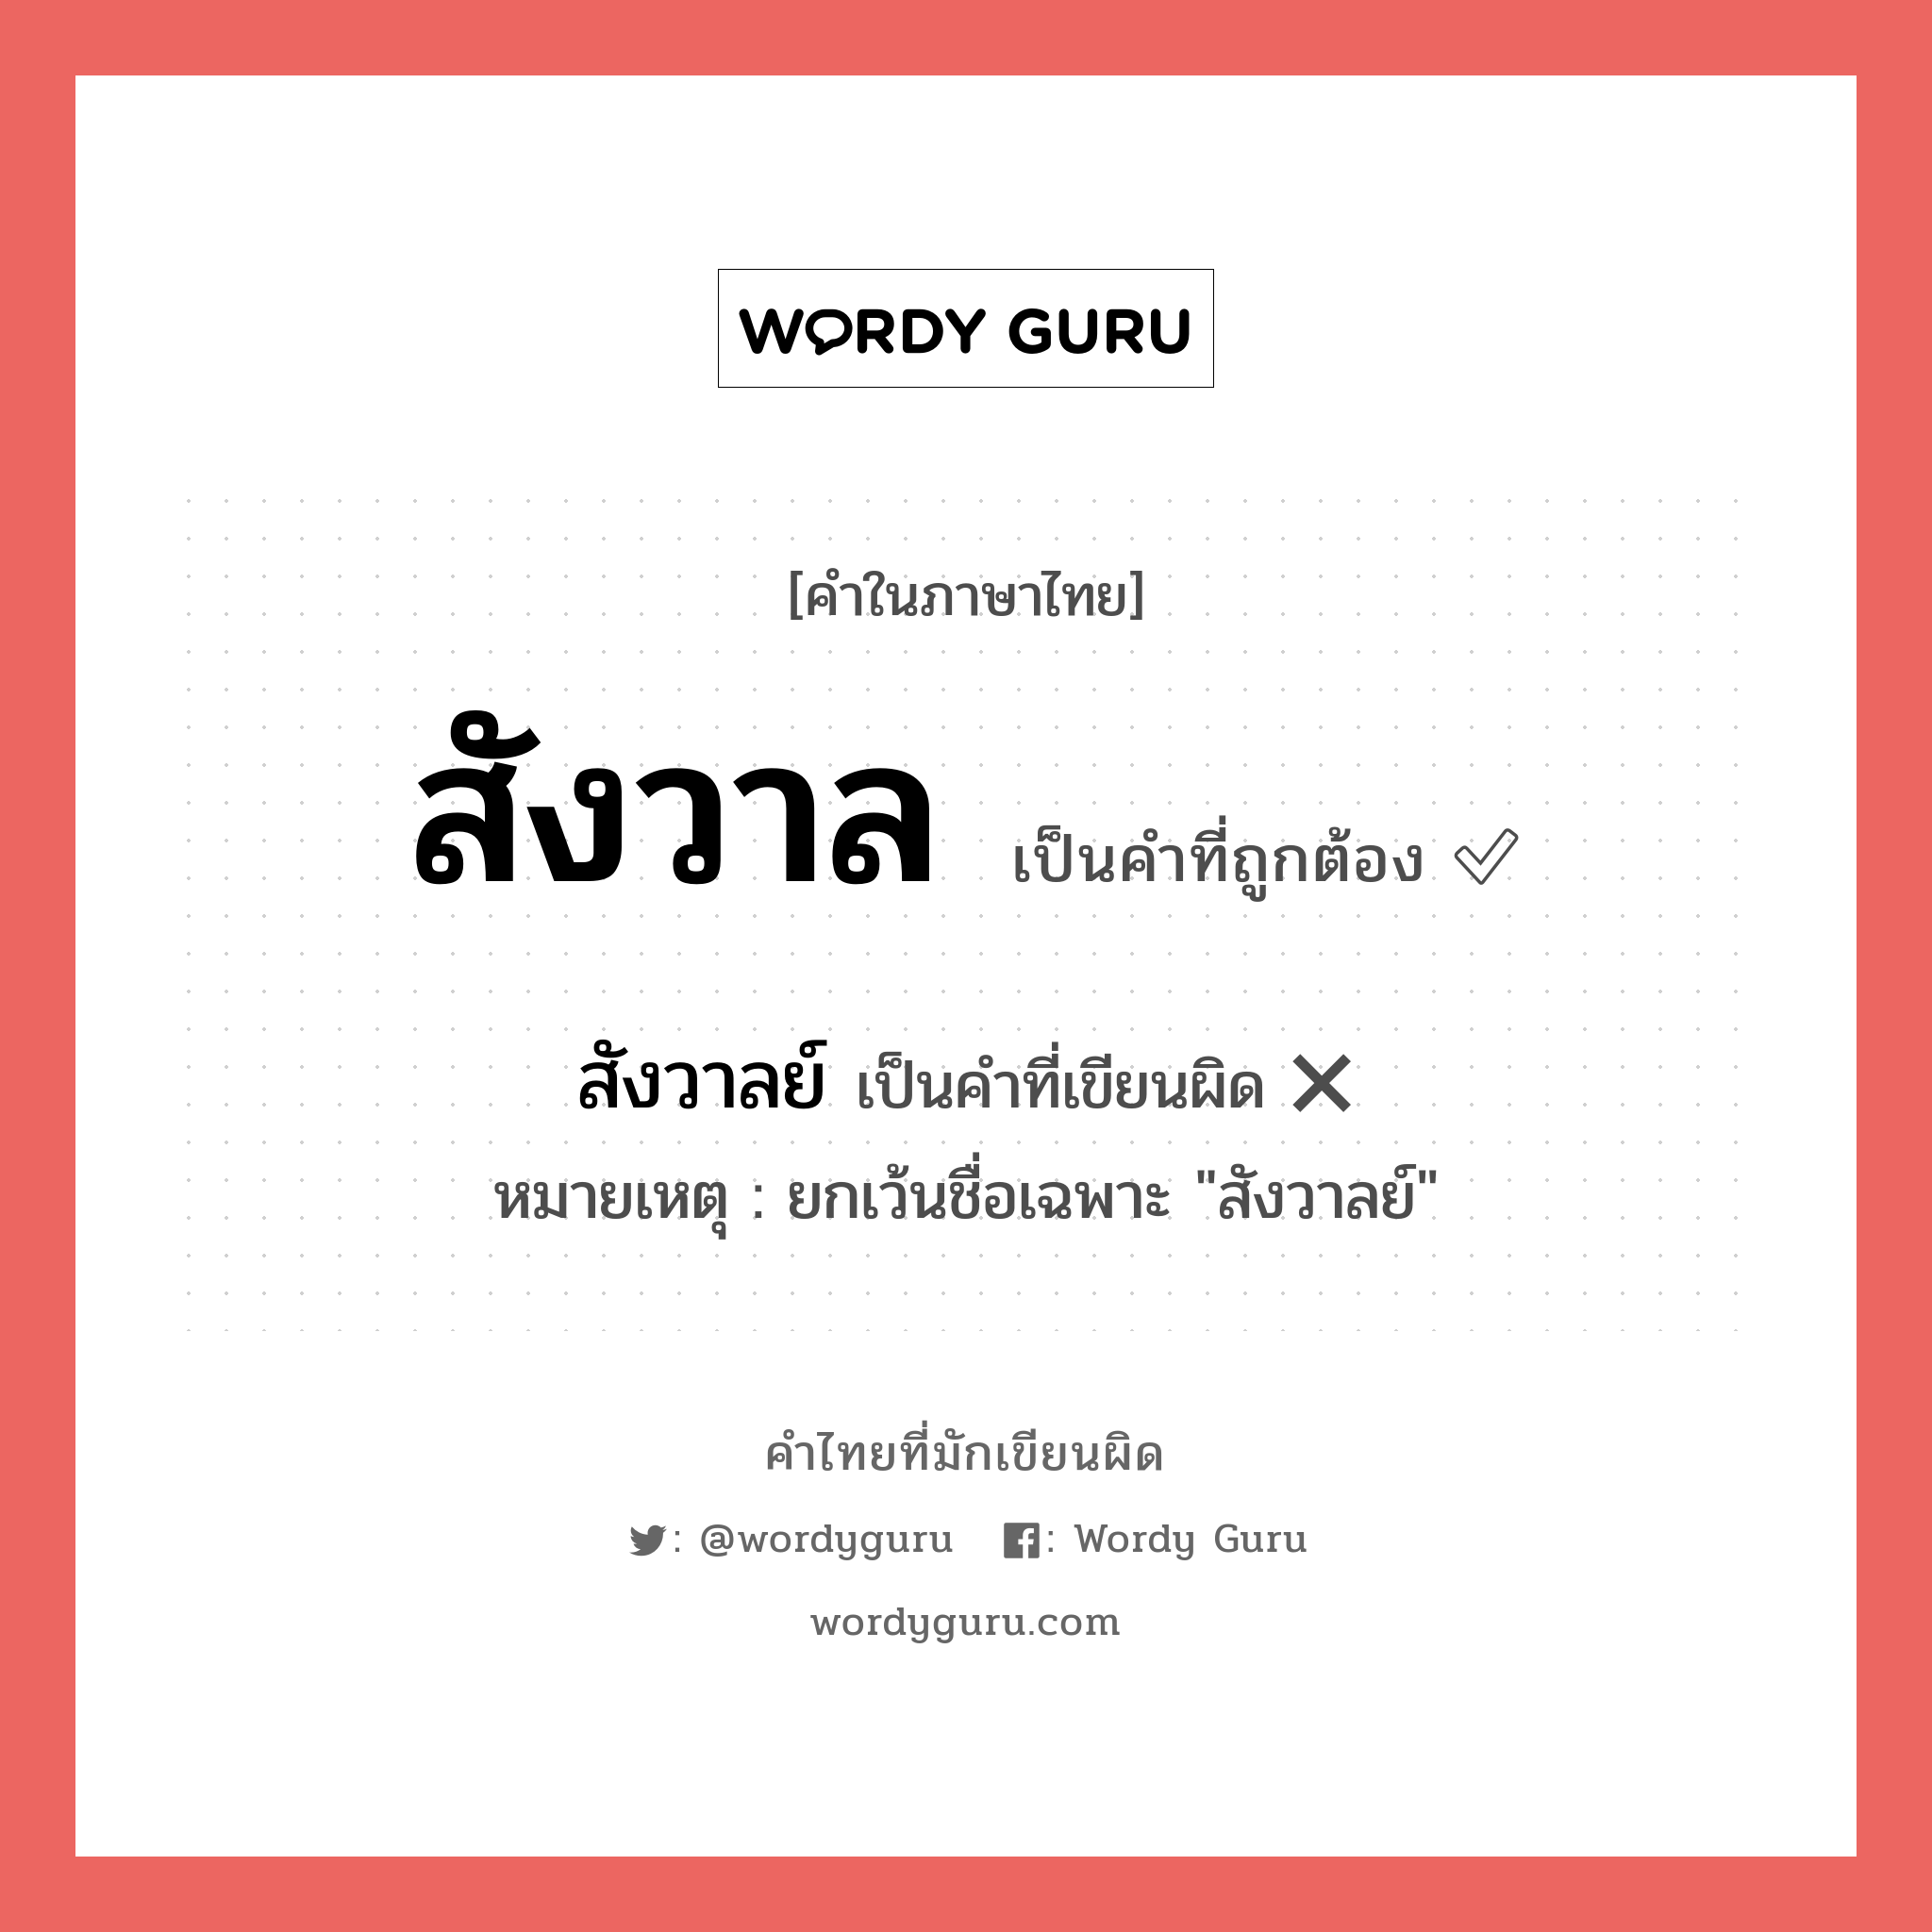 สังวาล หรือ สังวาลย์ เขียนยังไง? คำไหนเขียนถูก?, คำในภาษาไทยที่มักเขียนผิด สังวาล คำที่ผิด ❌ สังวาลย์ หมายเหตุ ยกเว้นชื่อเฉพาะ "สังวาลย์"